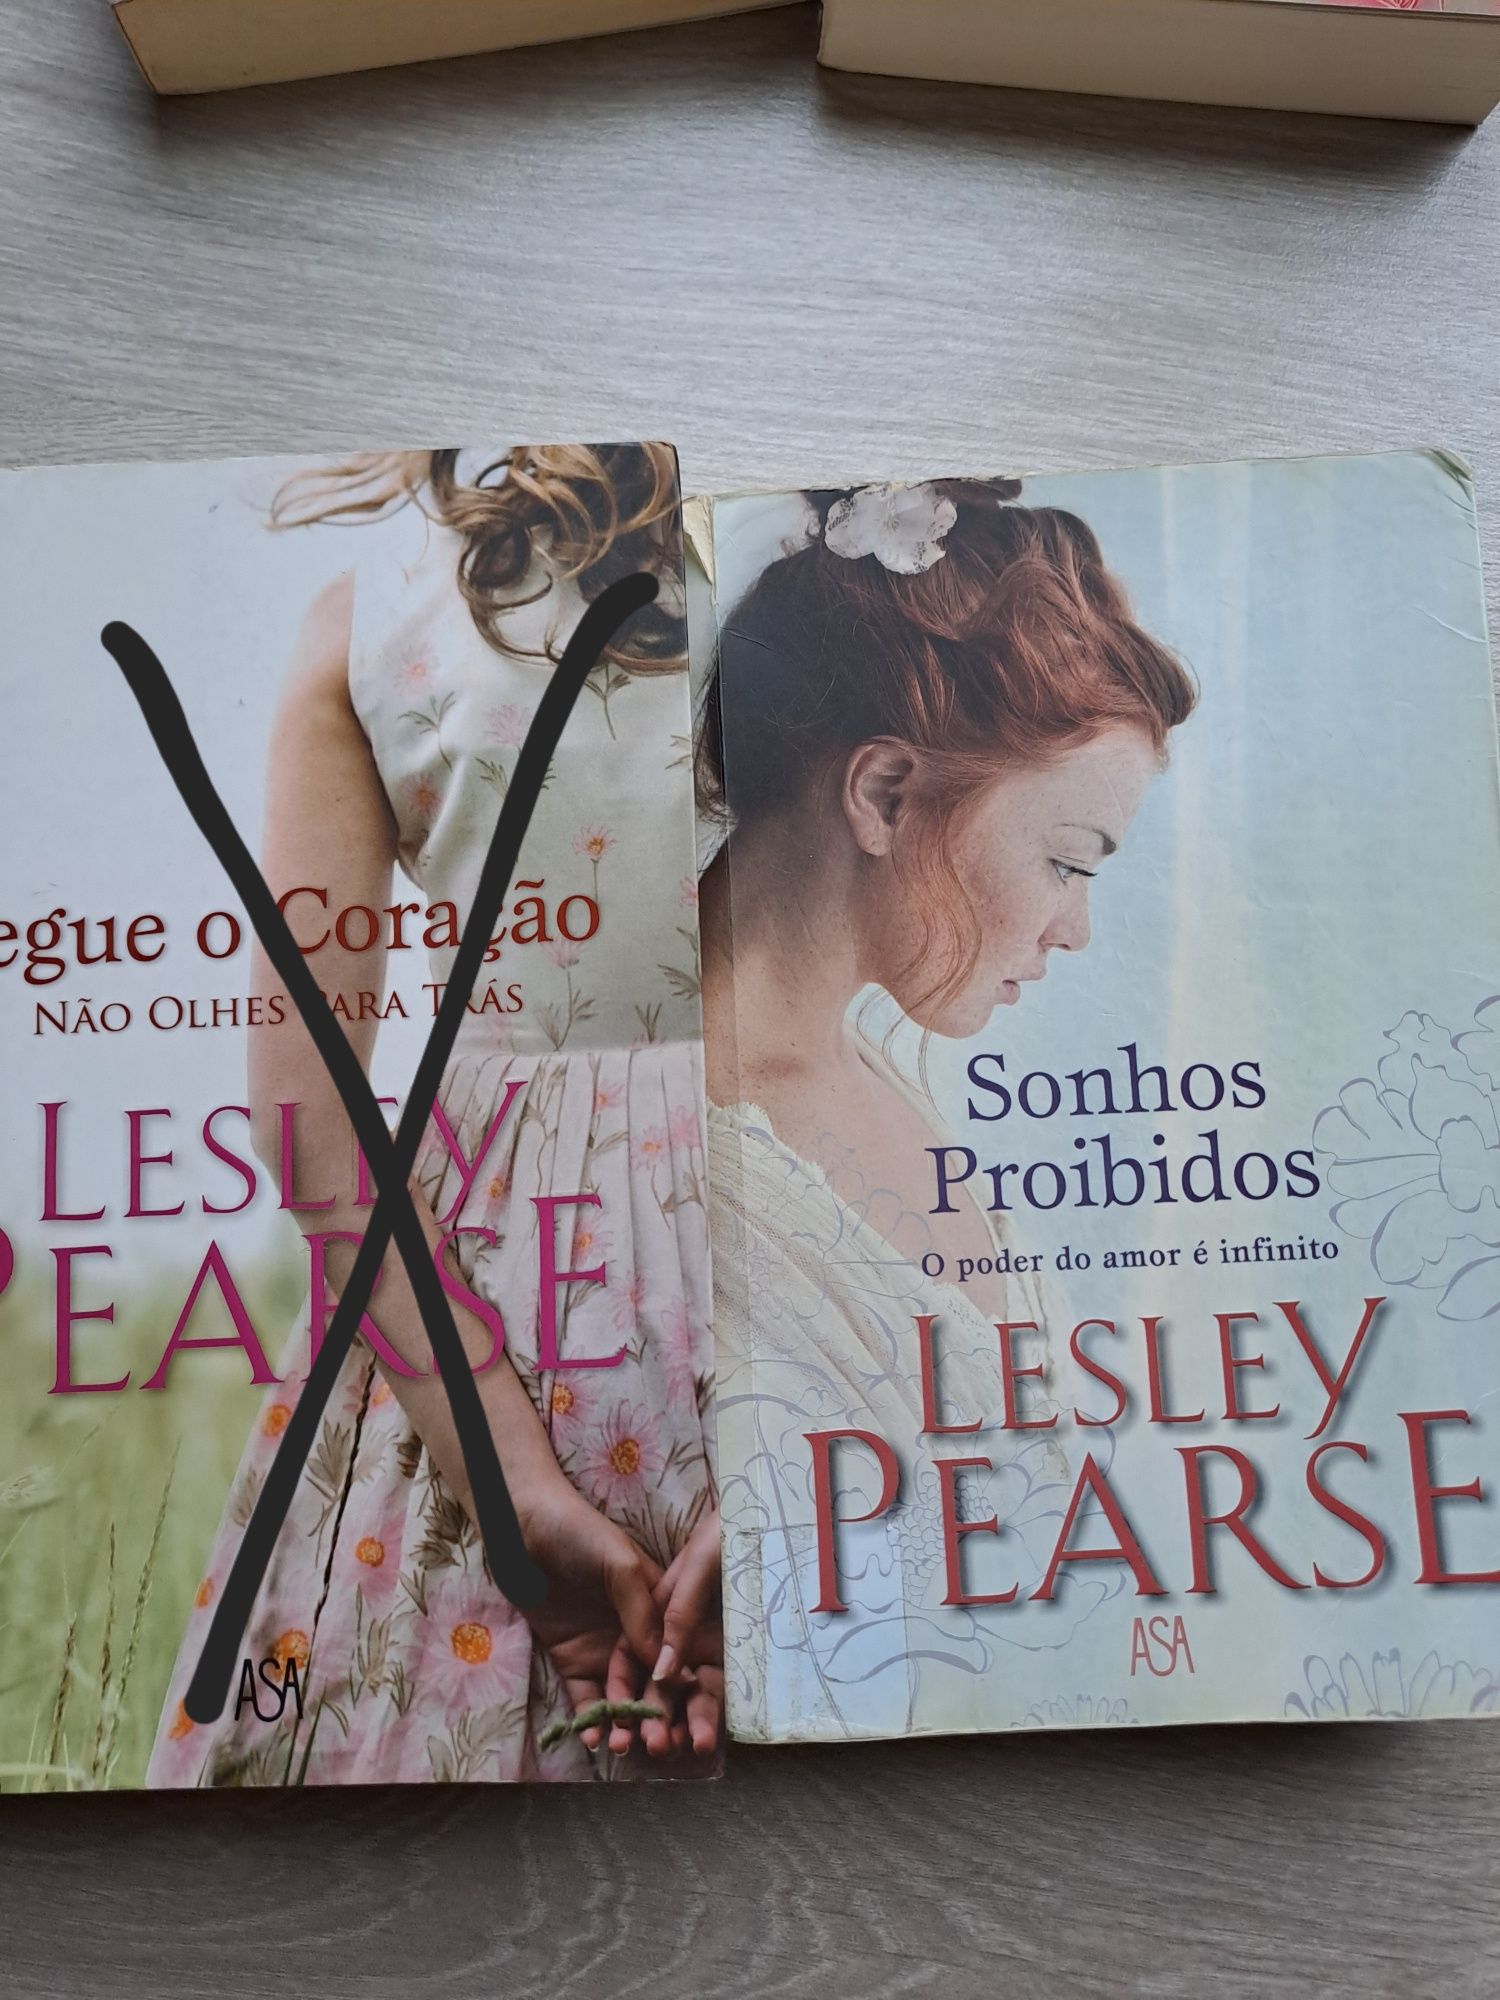 Livros Sveva casati/ Lesley pearse